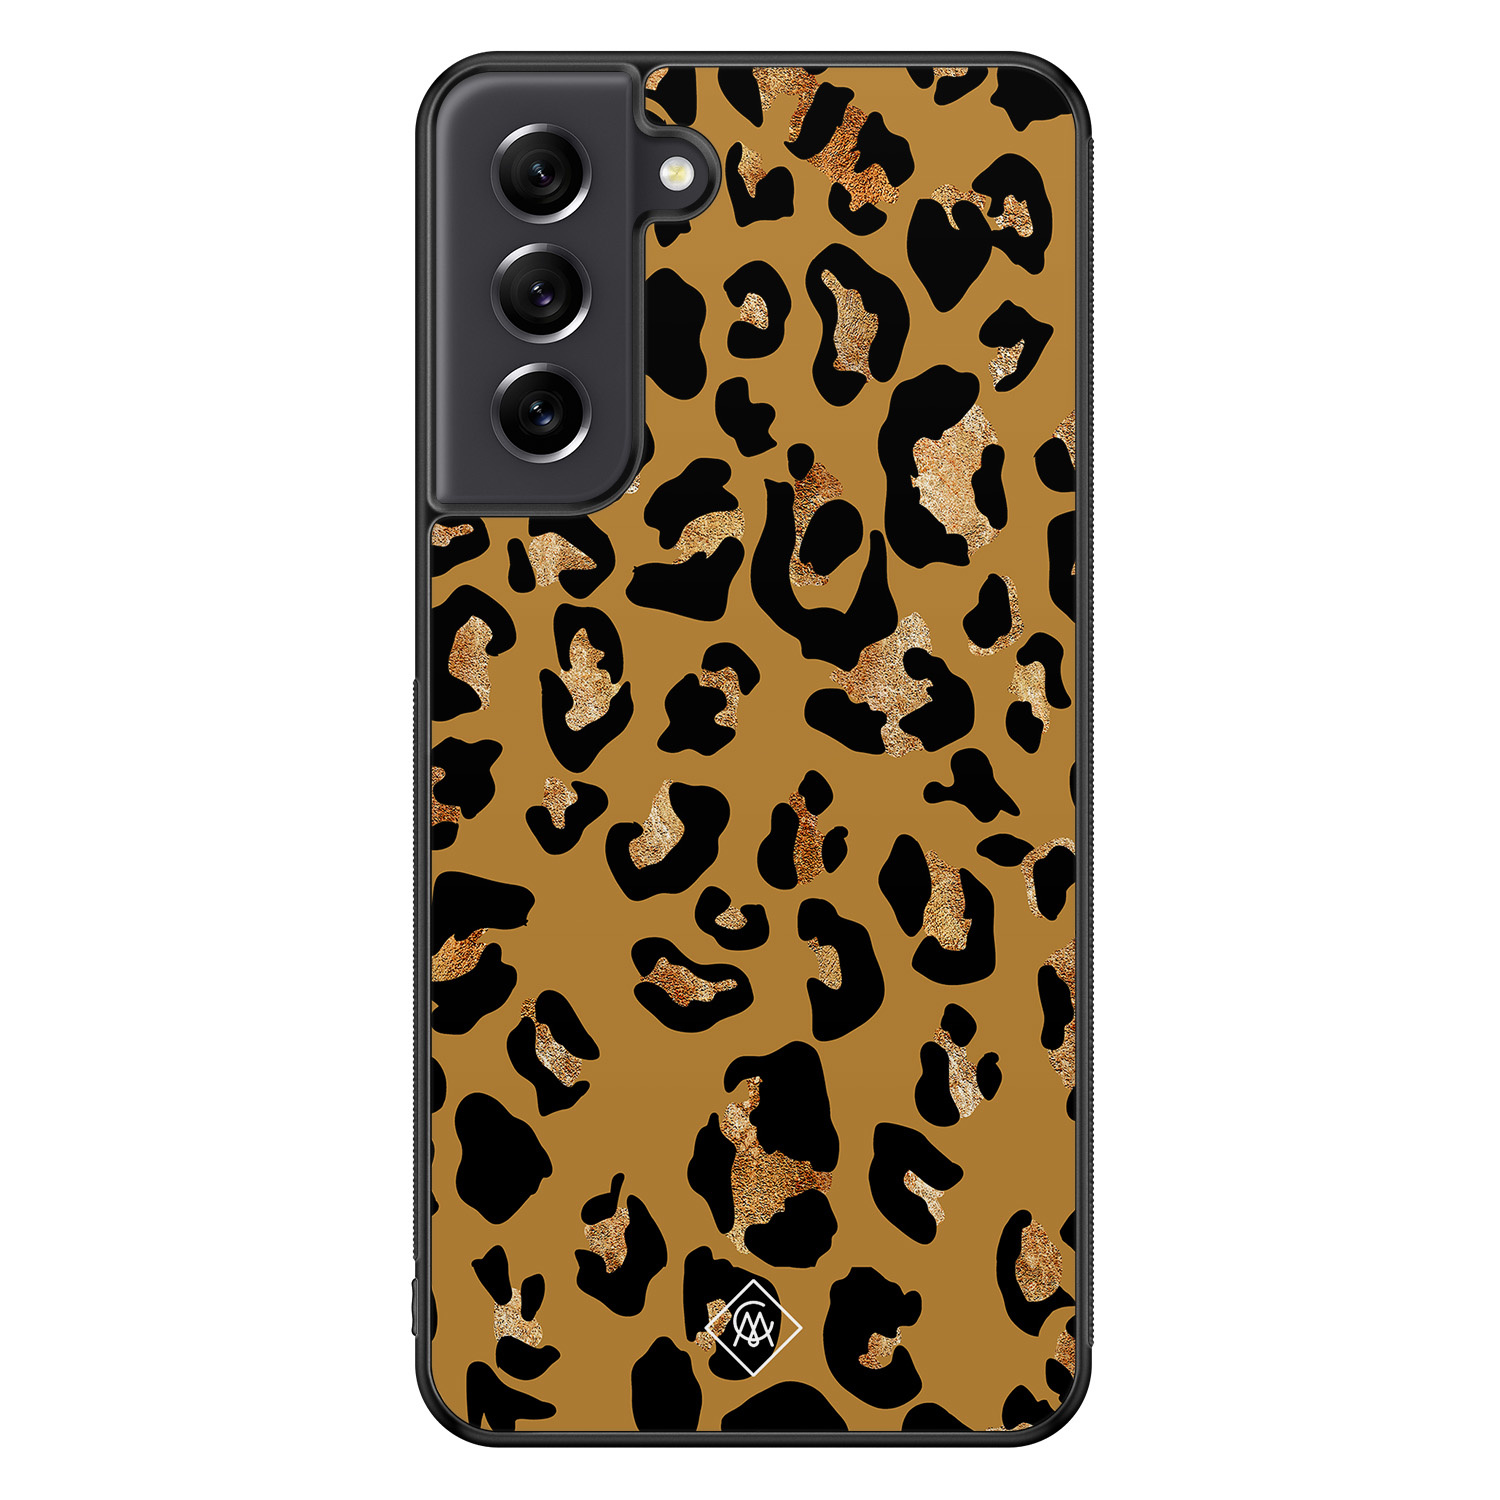 Samsung Galaxy S21 FE hoesje - Jungle wildcat